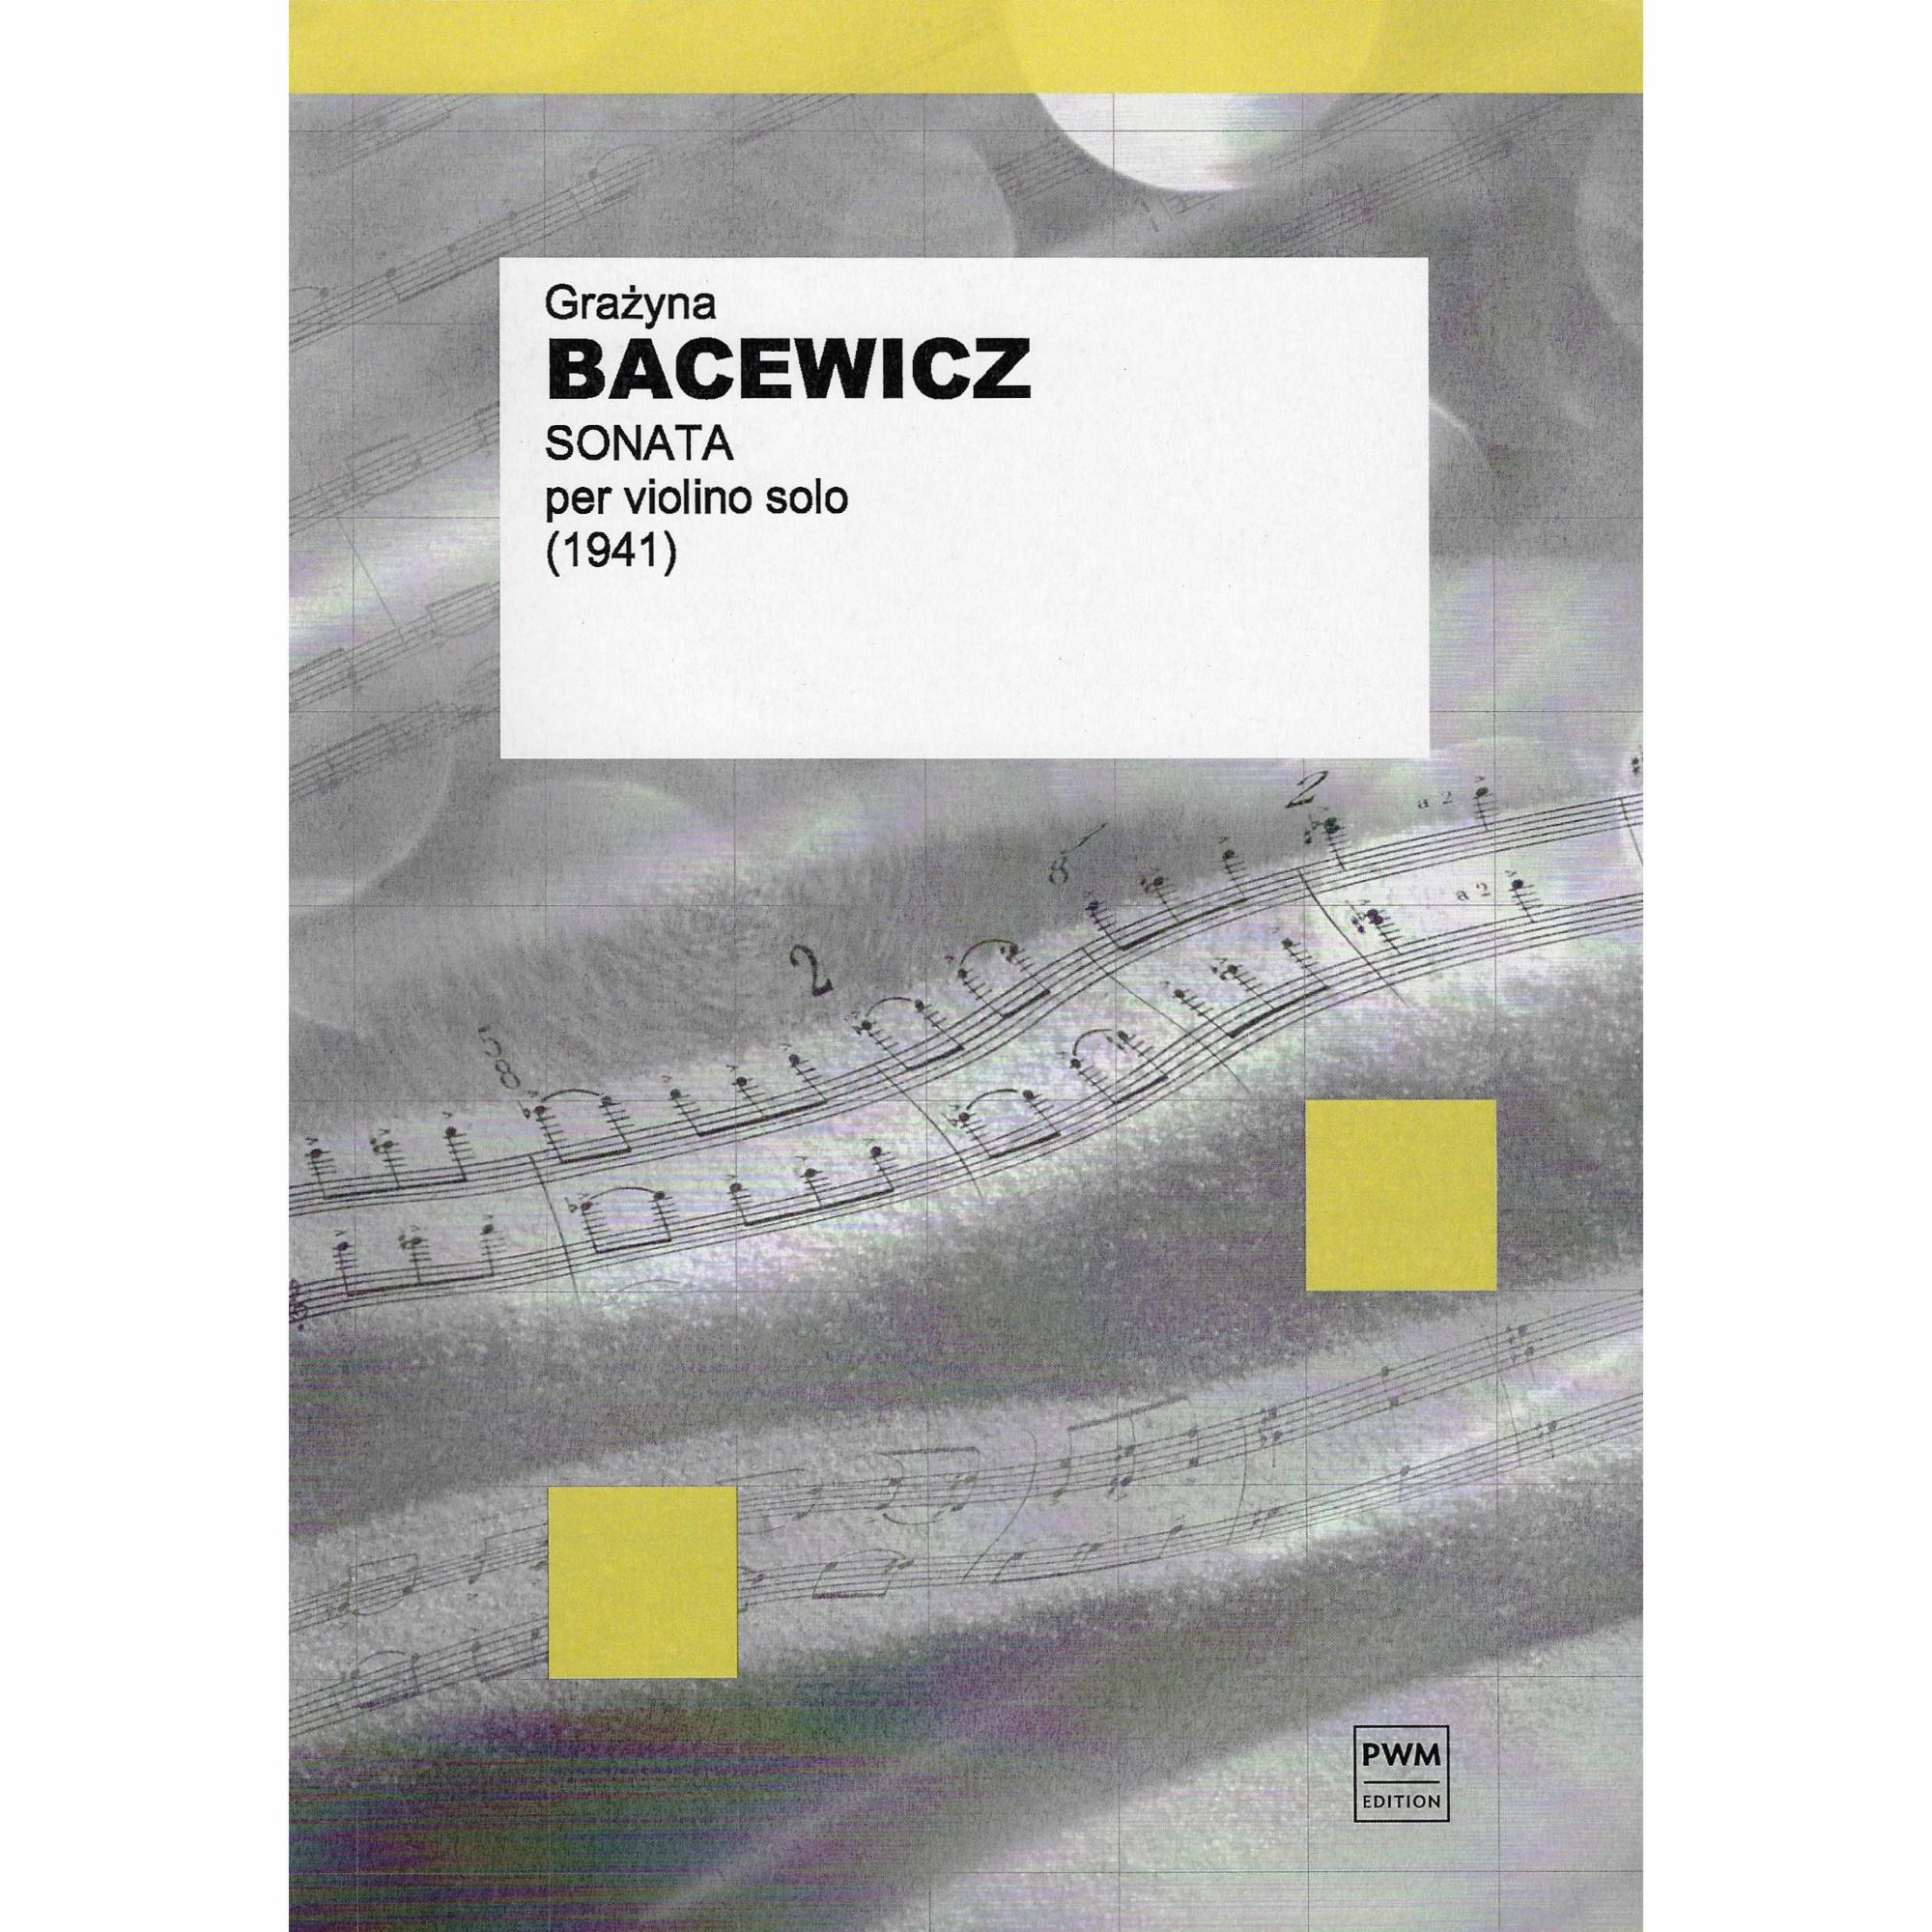 Bacewicz -- Sonata for Solo Violin